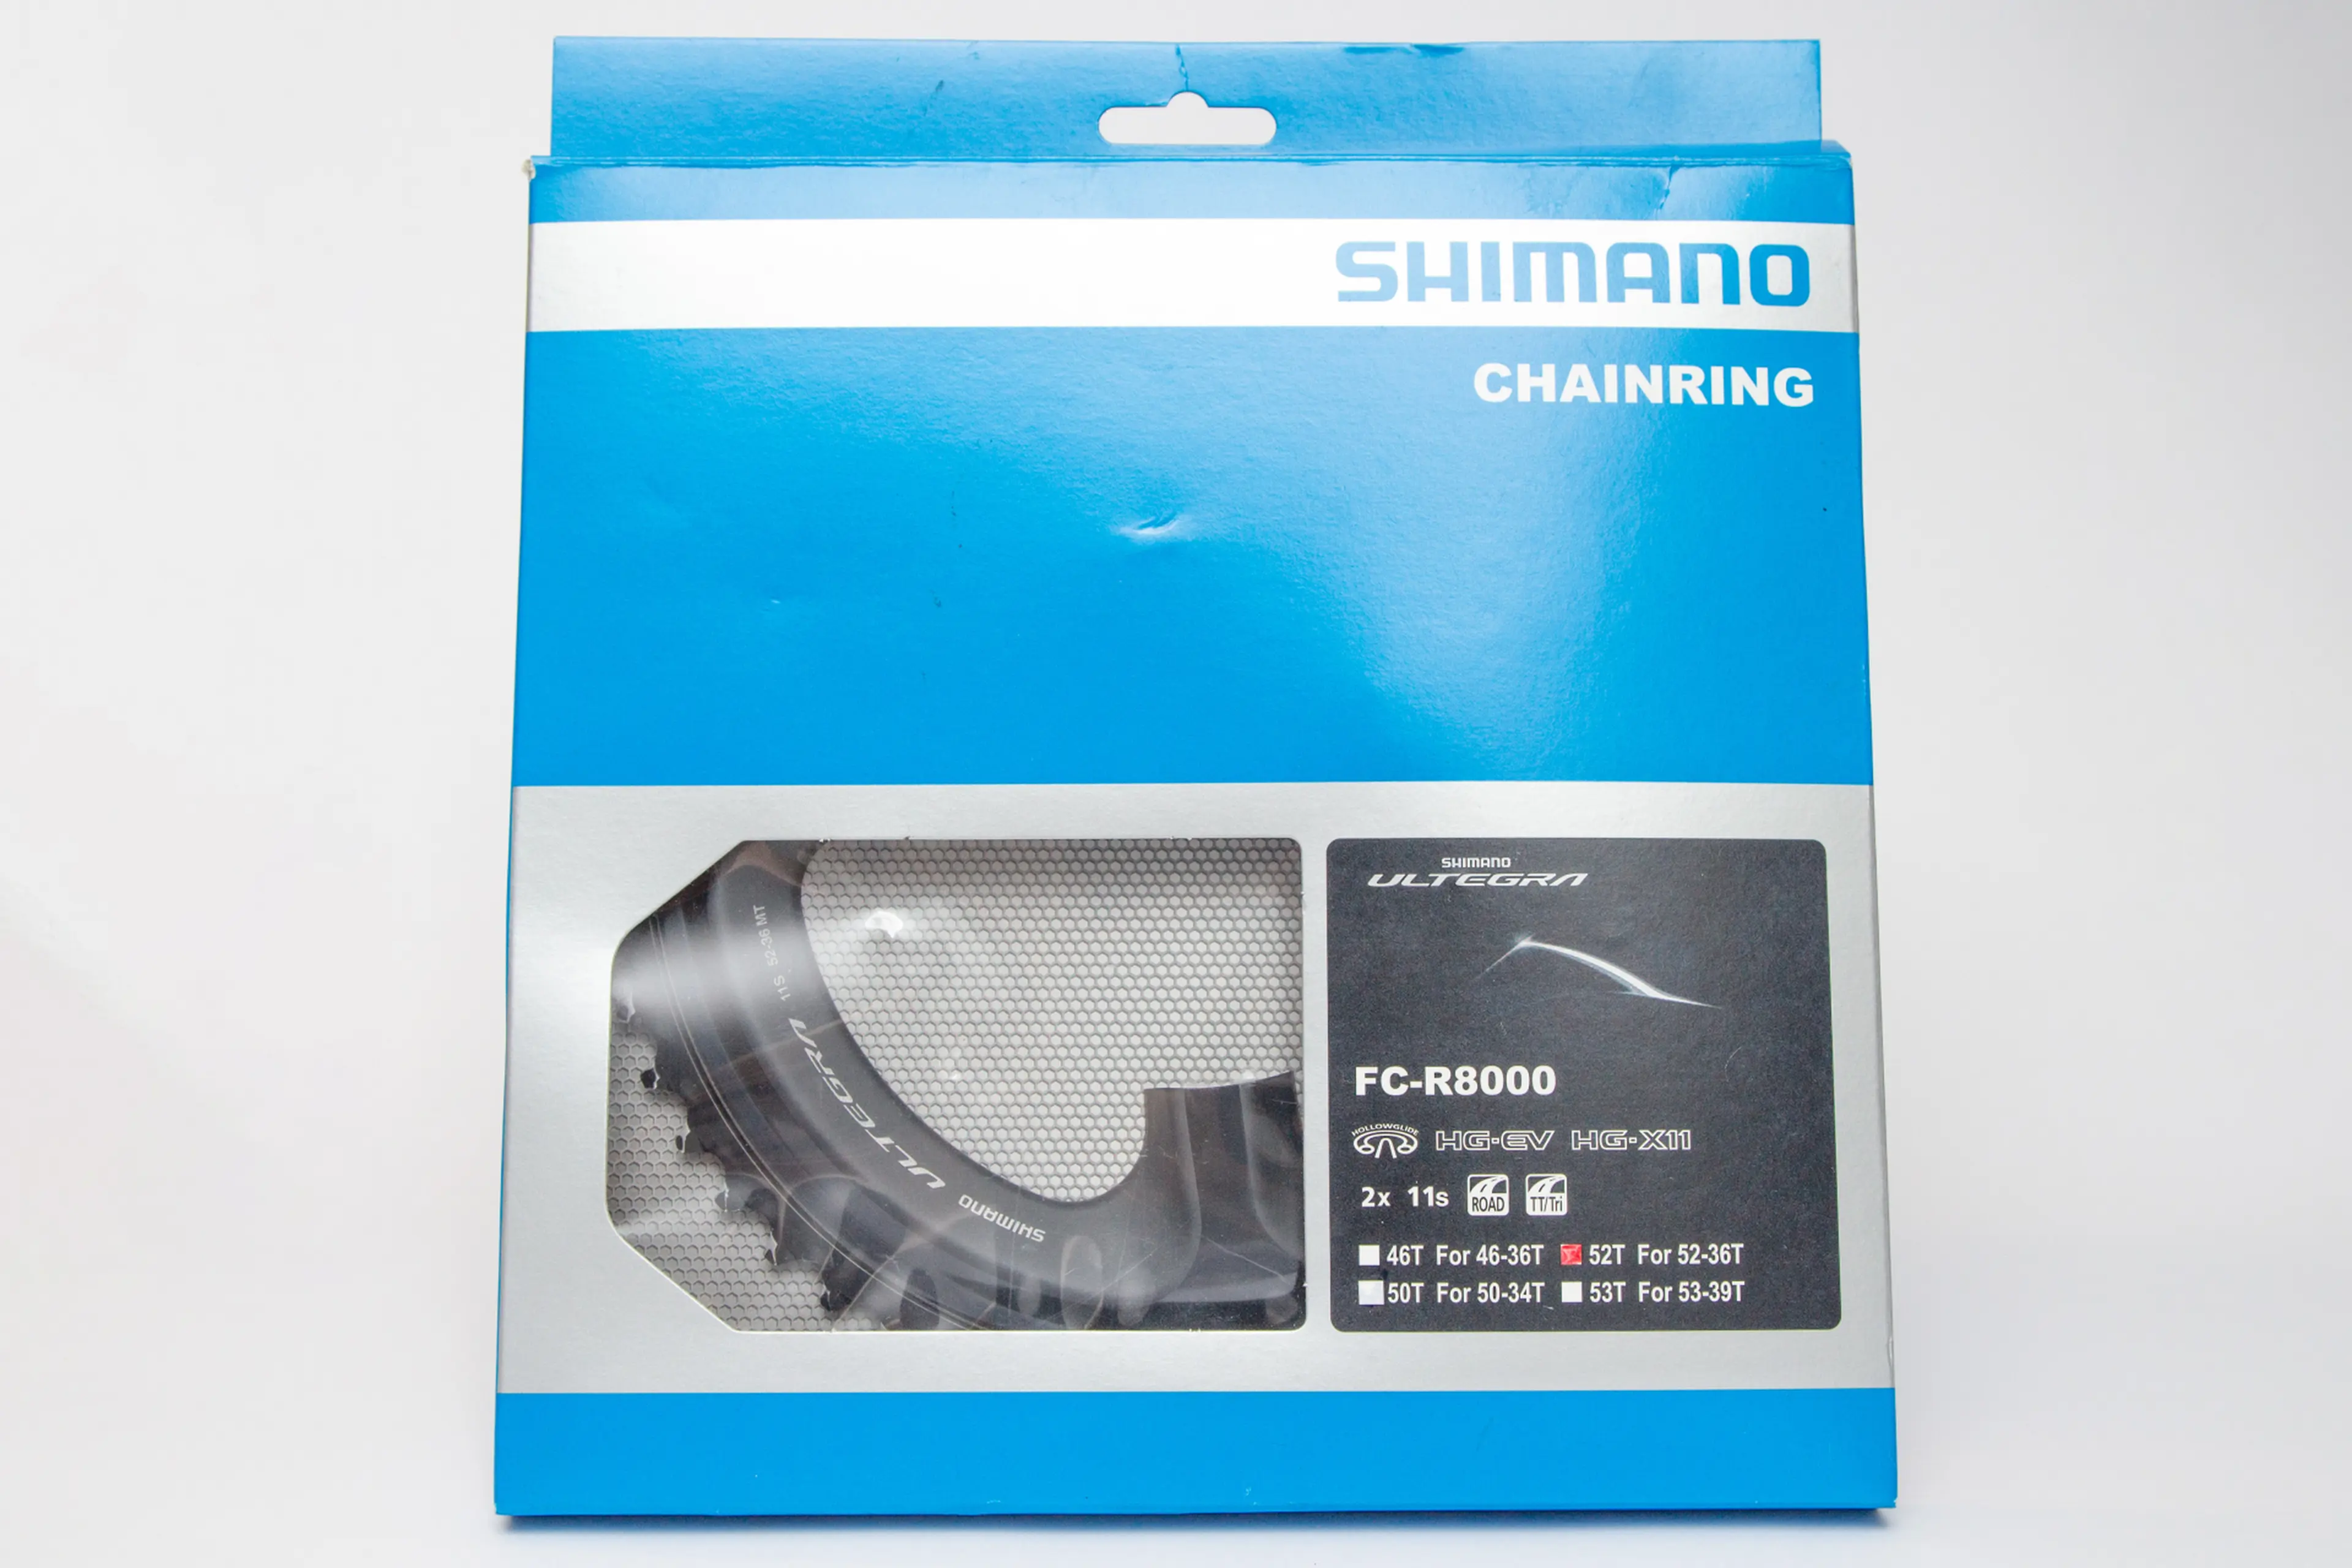 6. Foi Chainring Shimano Ultegra R8000 FC-R8000